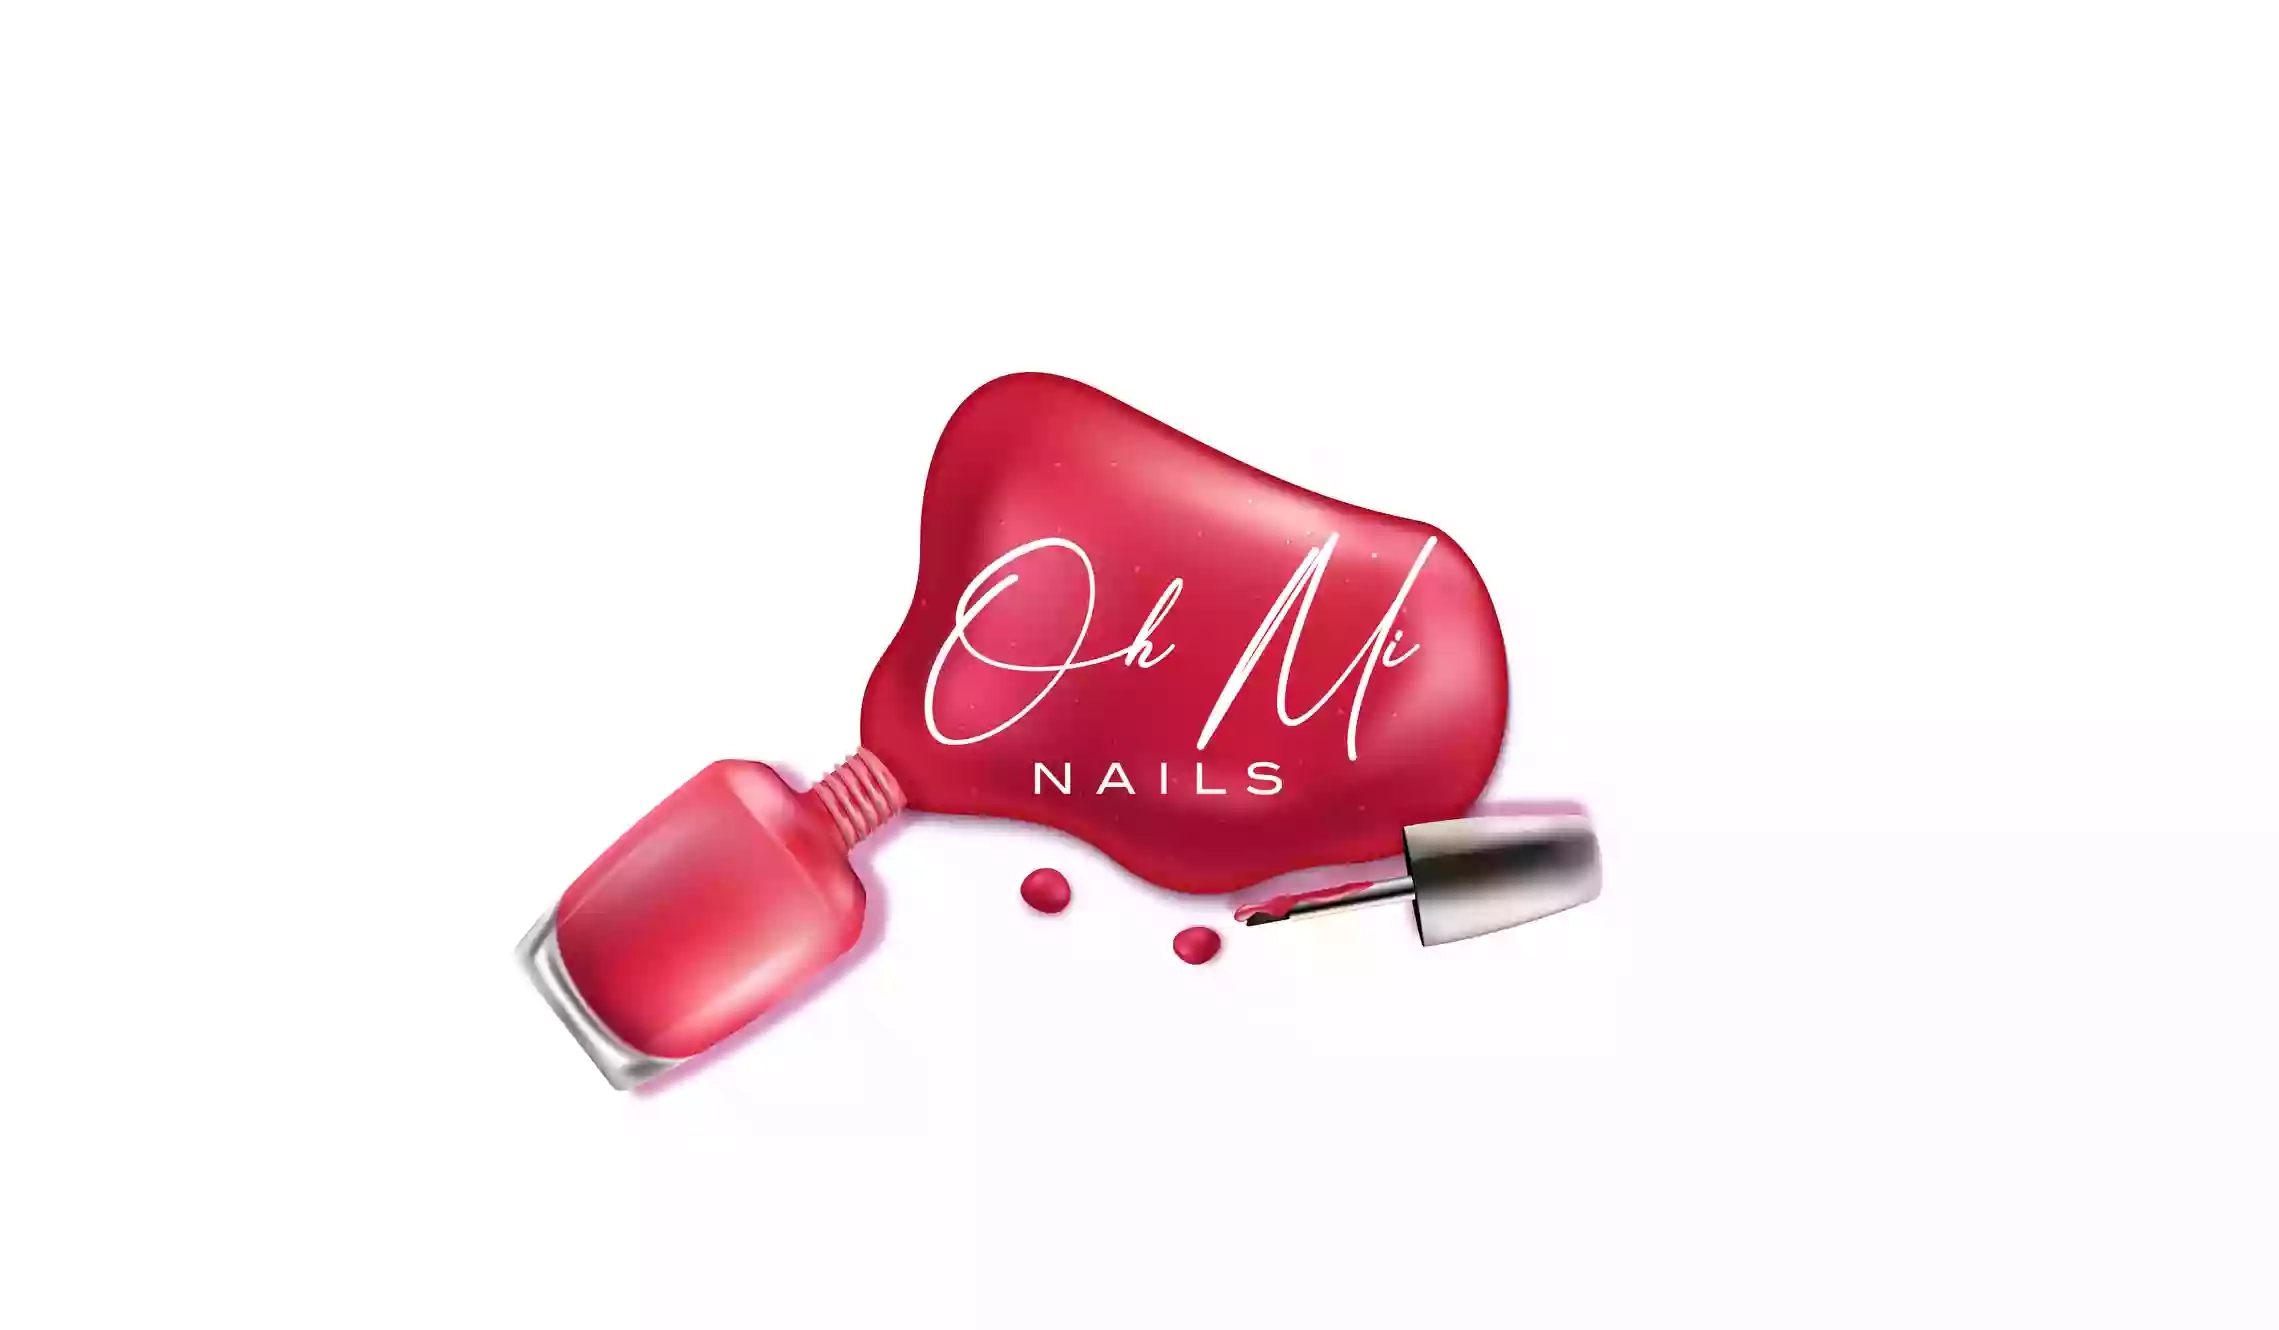 Oh Mi Nails